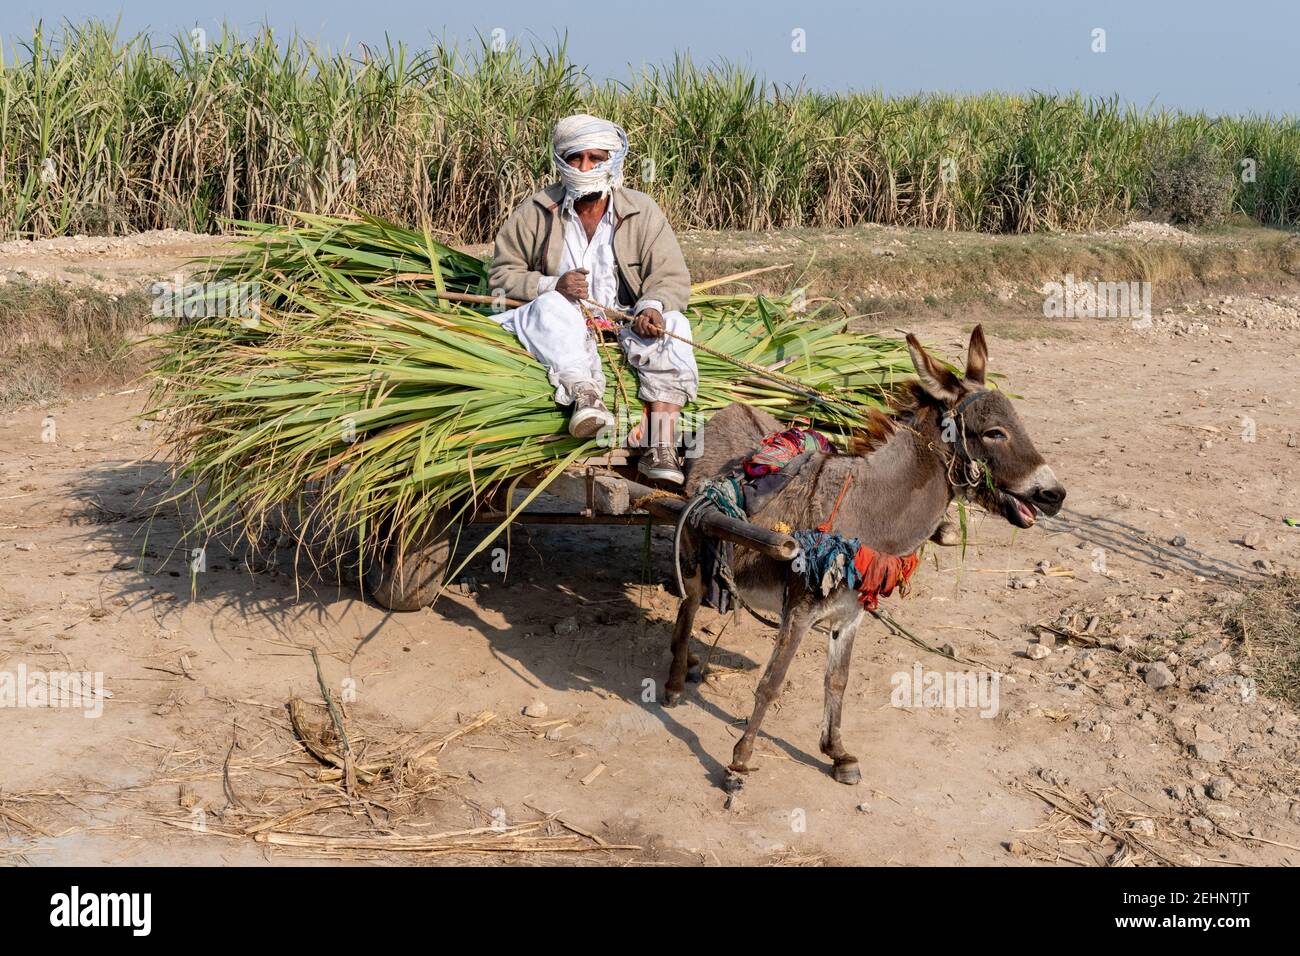 Man with his mule, rural Punjab, Pakistan Stock Photo